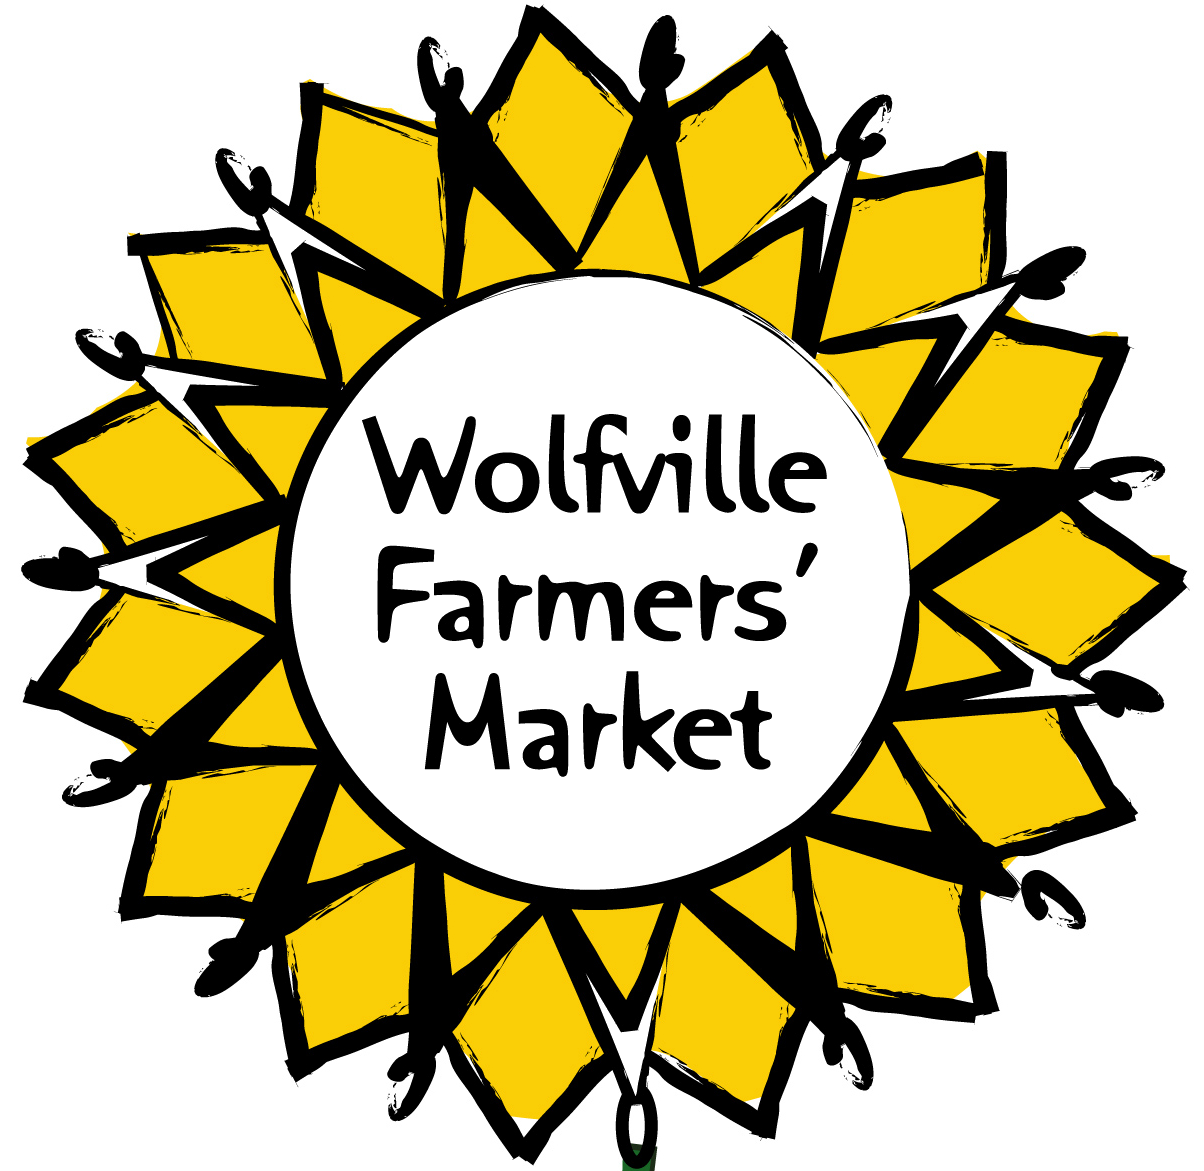 Wolfville's Farmers Market